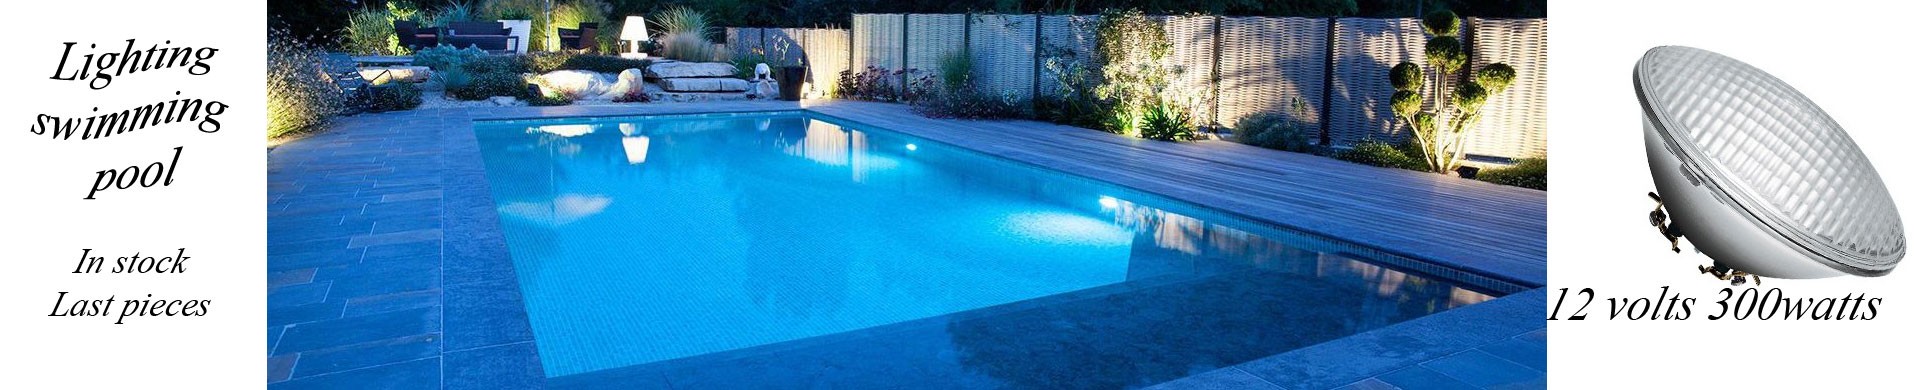 Swimming pool lighting